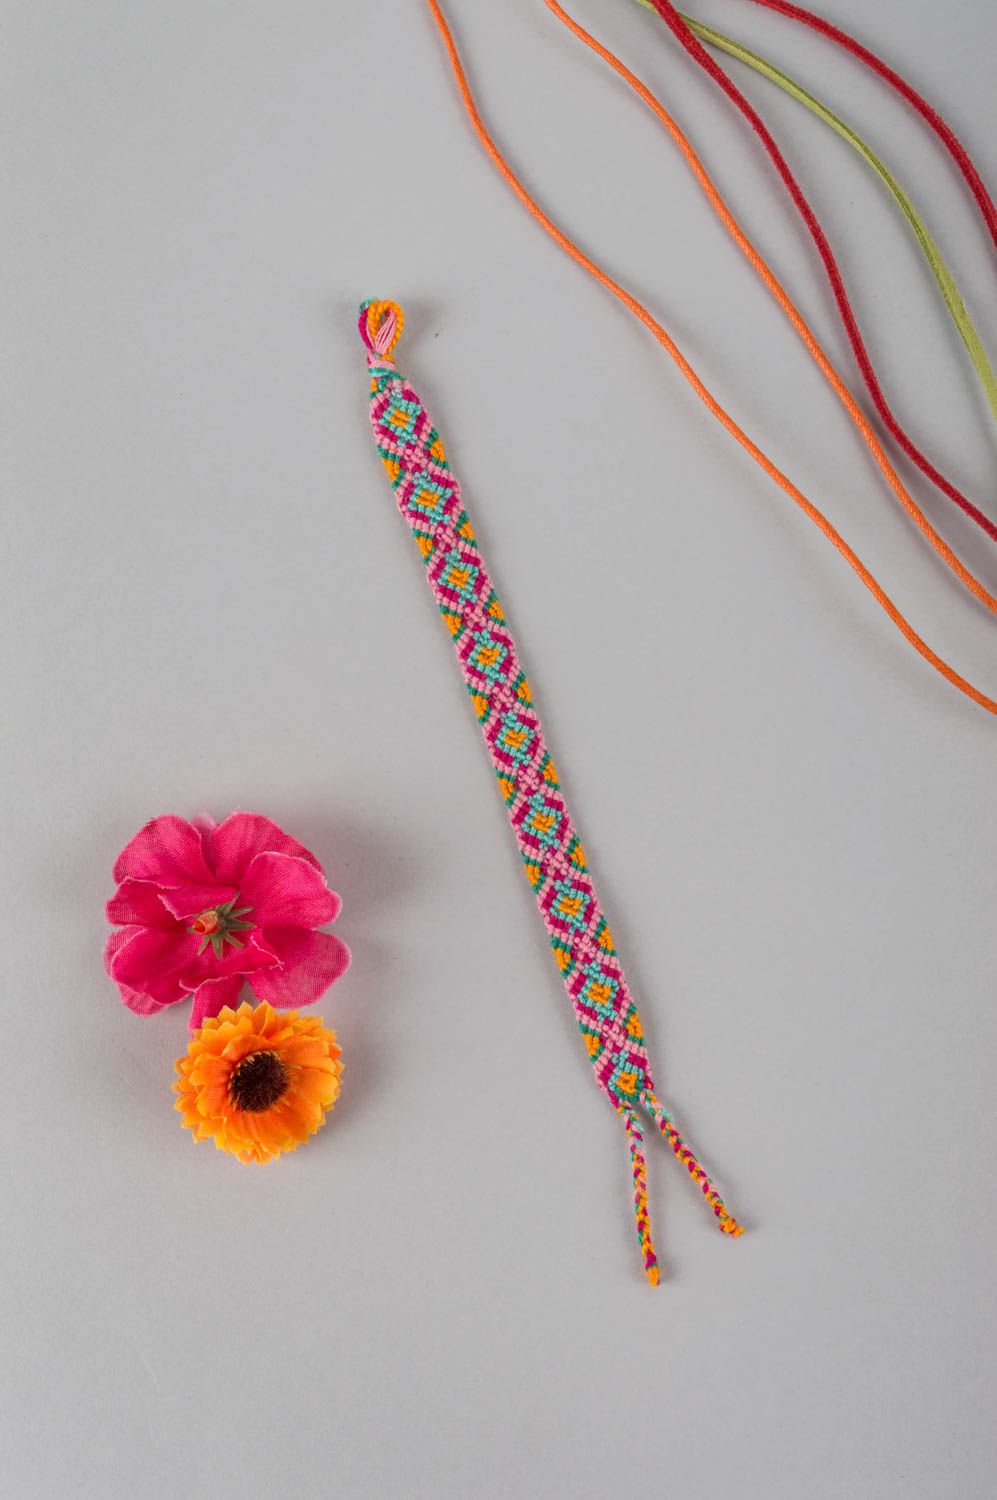 Красочный нитяной браслет ручной работы авторского дизайна плетеный красивый фото 1